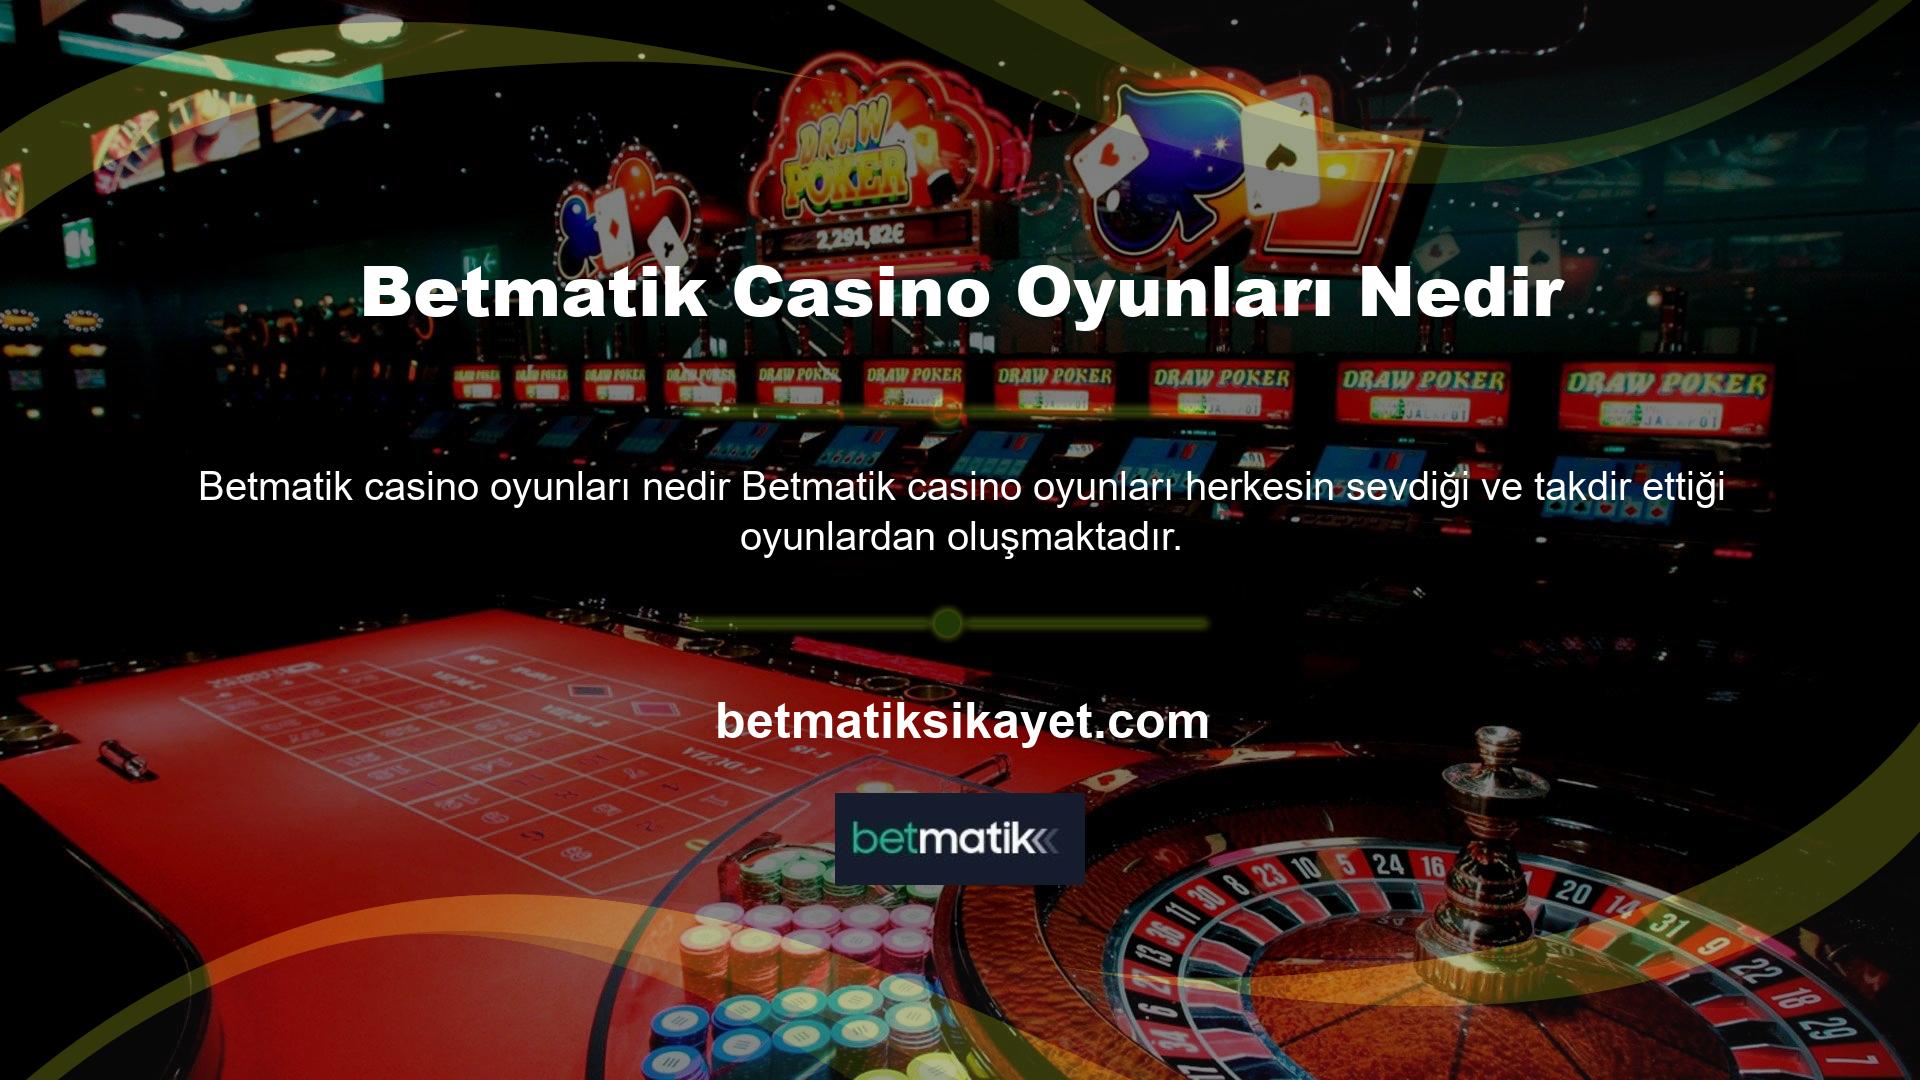 Betmatik casino hizmetleri, yerel casinoda oynanan kartlar ve diğer casino oyunları sunar